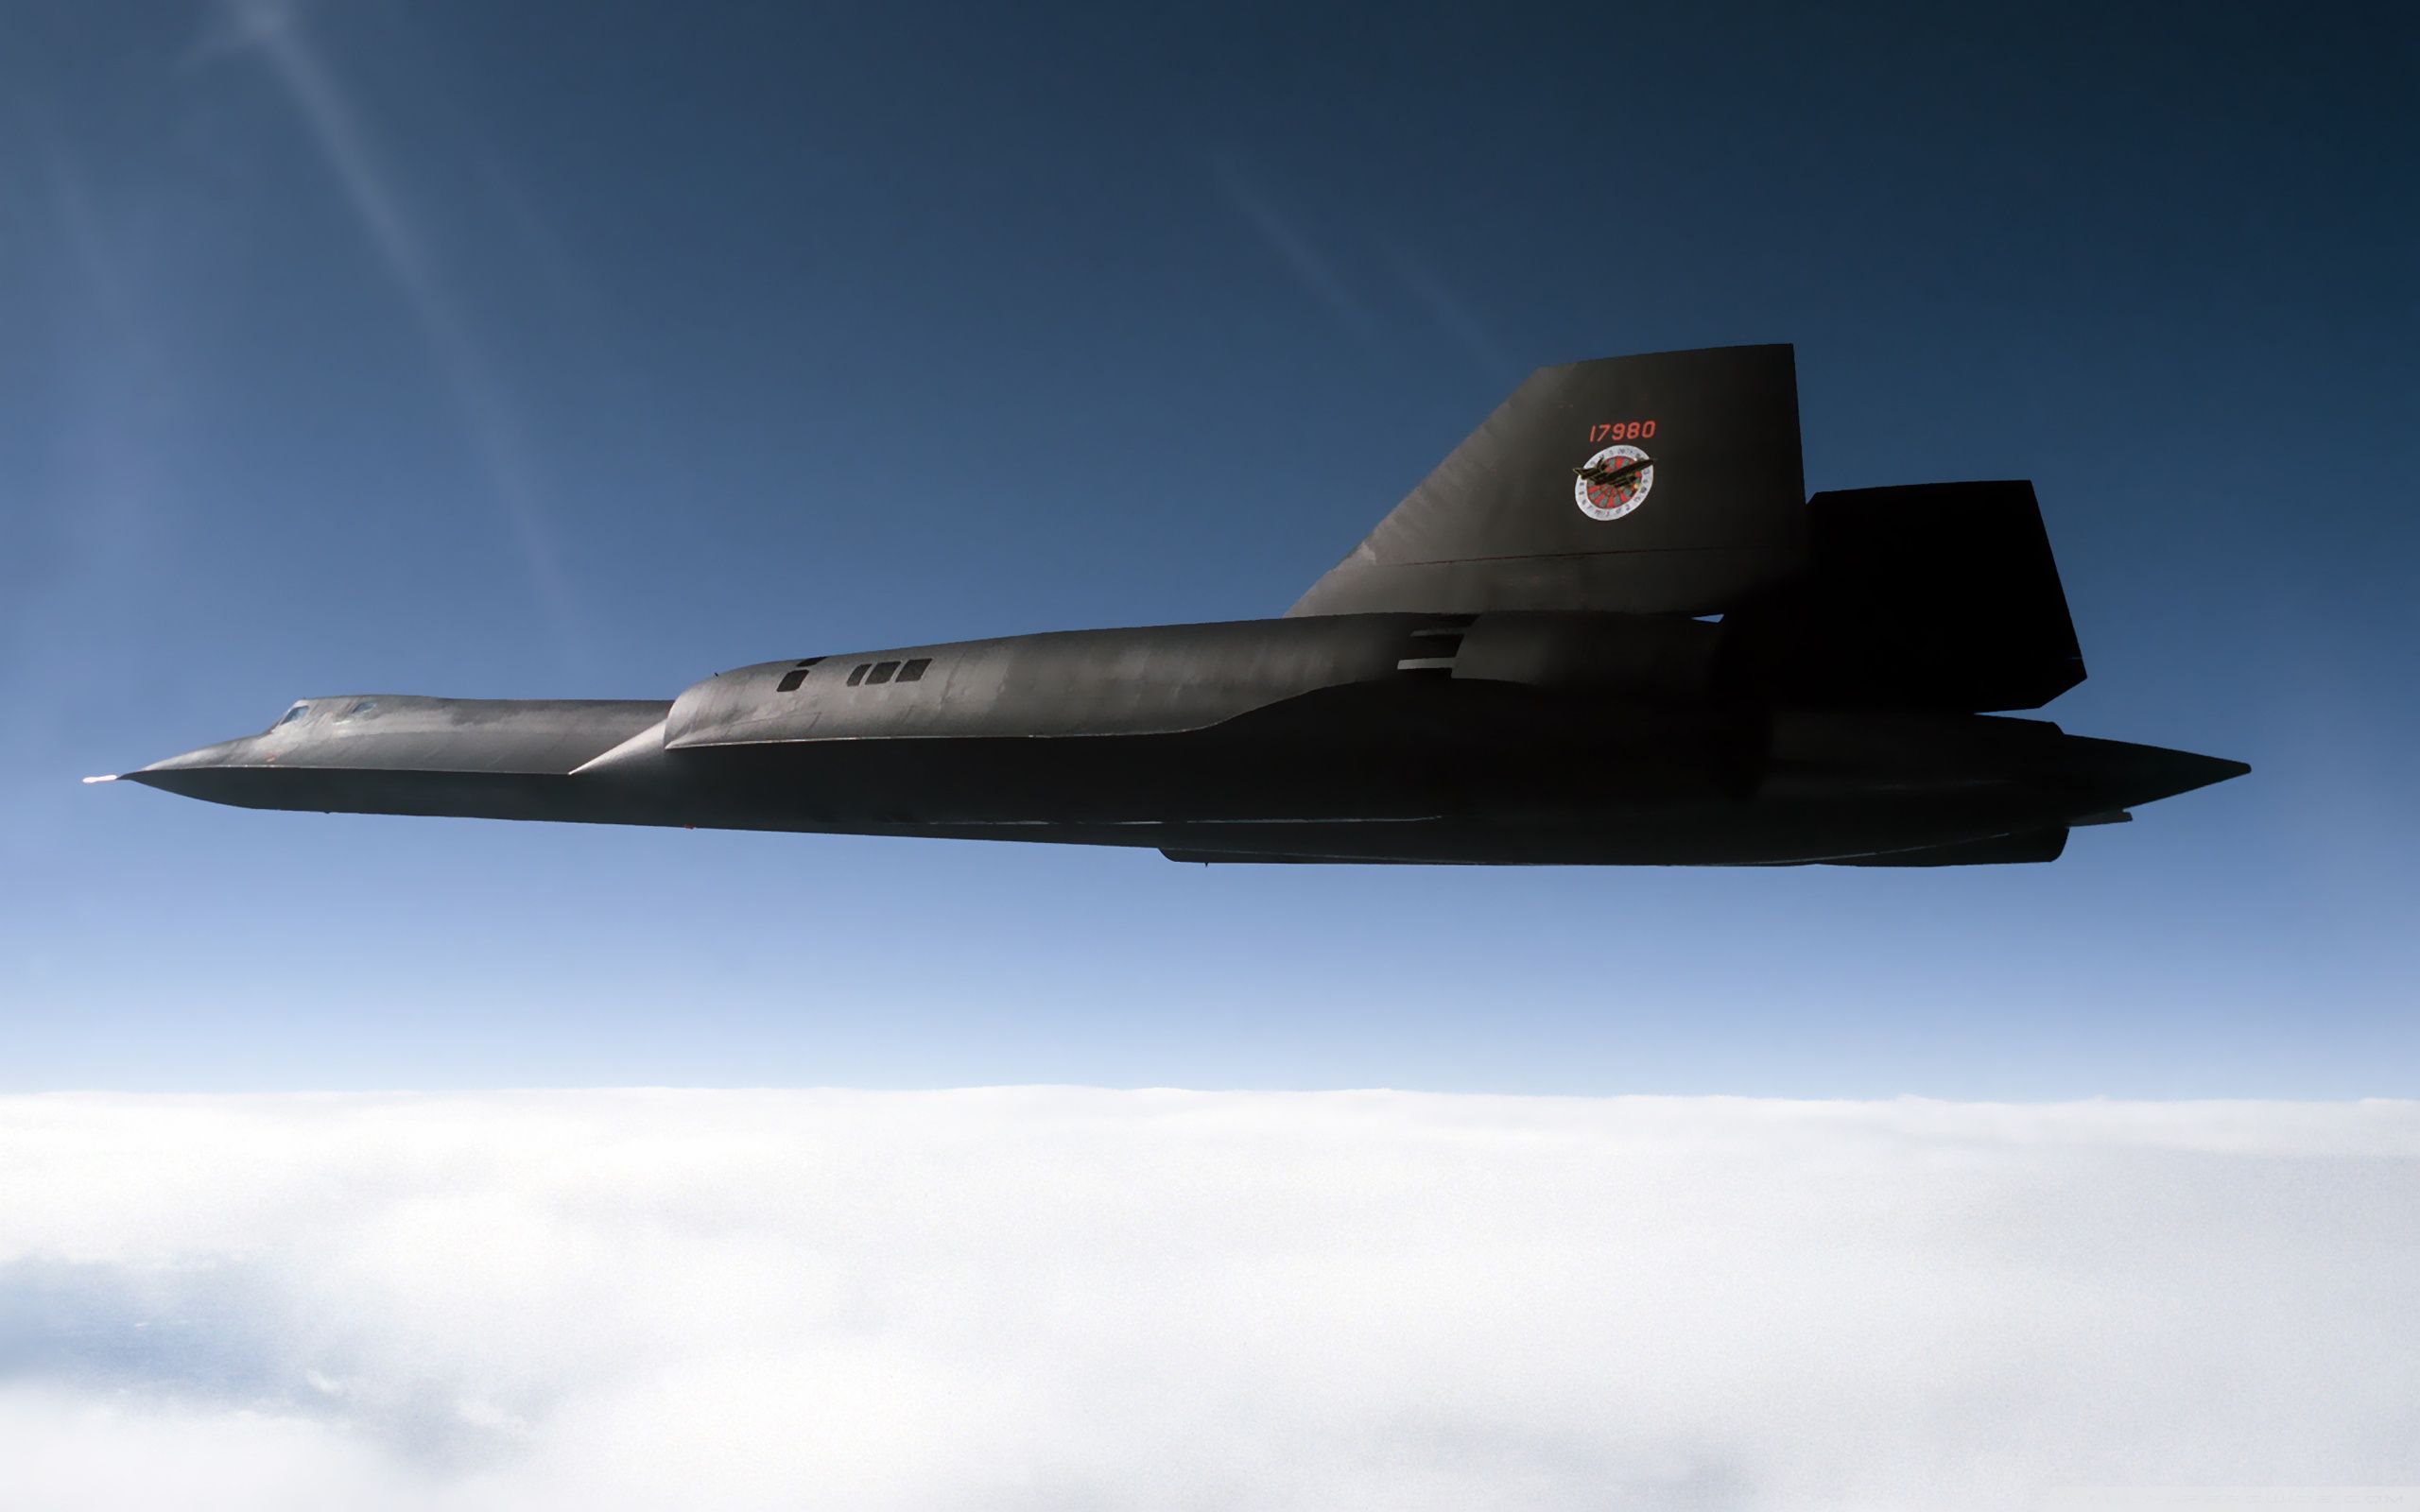 Lockheed SR 71 Blackbird Wallpaper Full HD [2560x1600] - Free ...